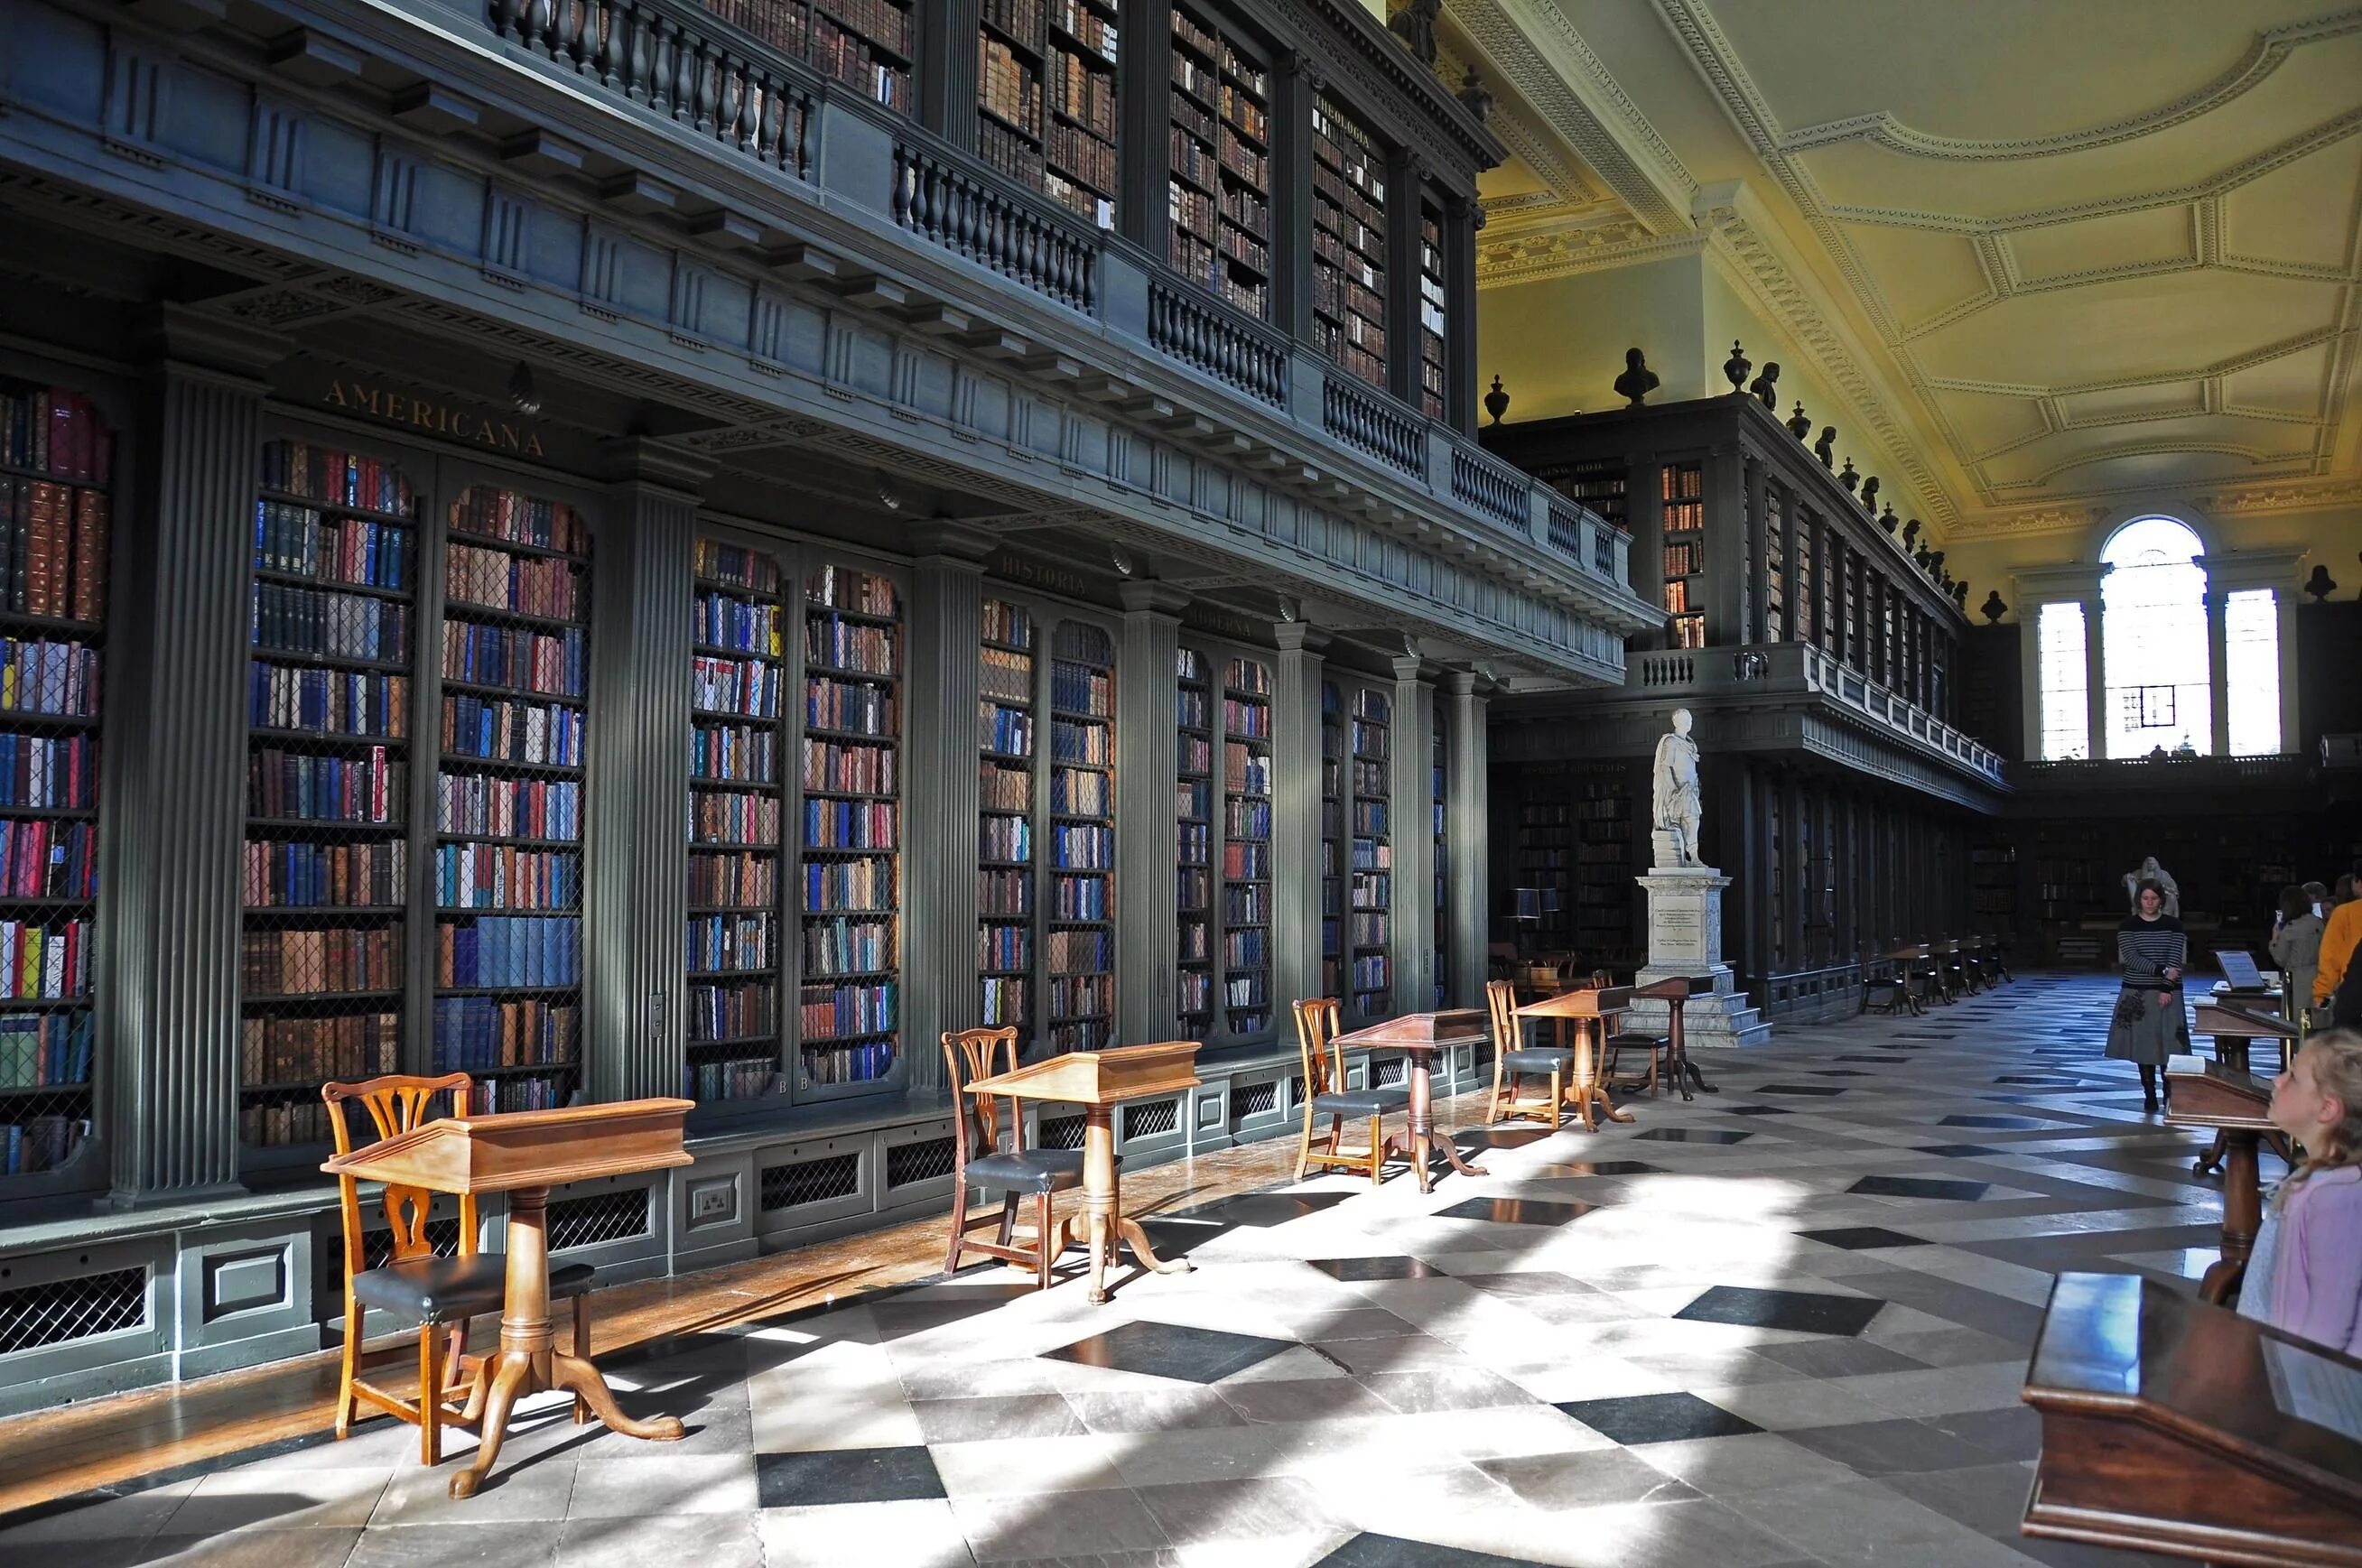 Extension library. Библиотека Кодрингтон Великобритания. Библиотека Тринити колледжа в Оксфорде. Оксфордский университет библиотека. Оксфорд университет Бодлианская библиотека.